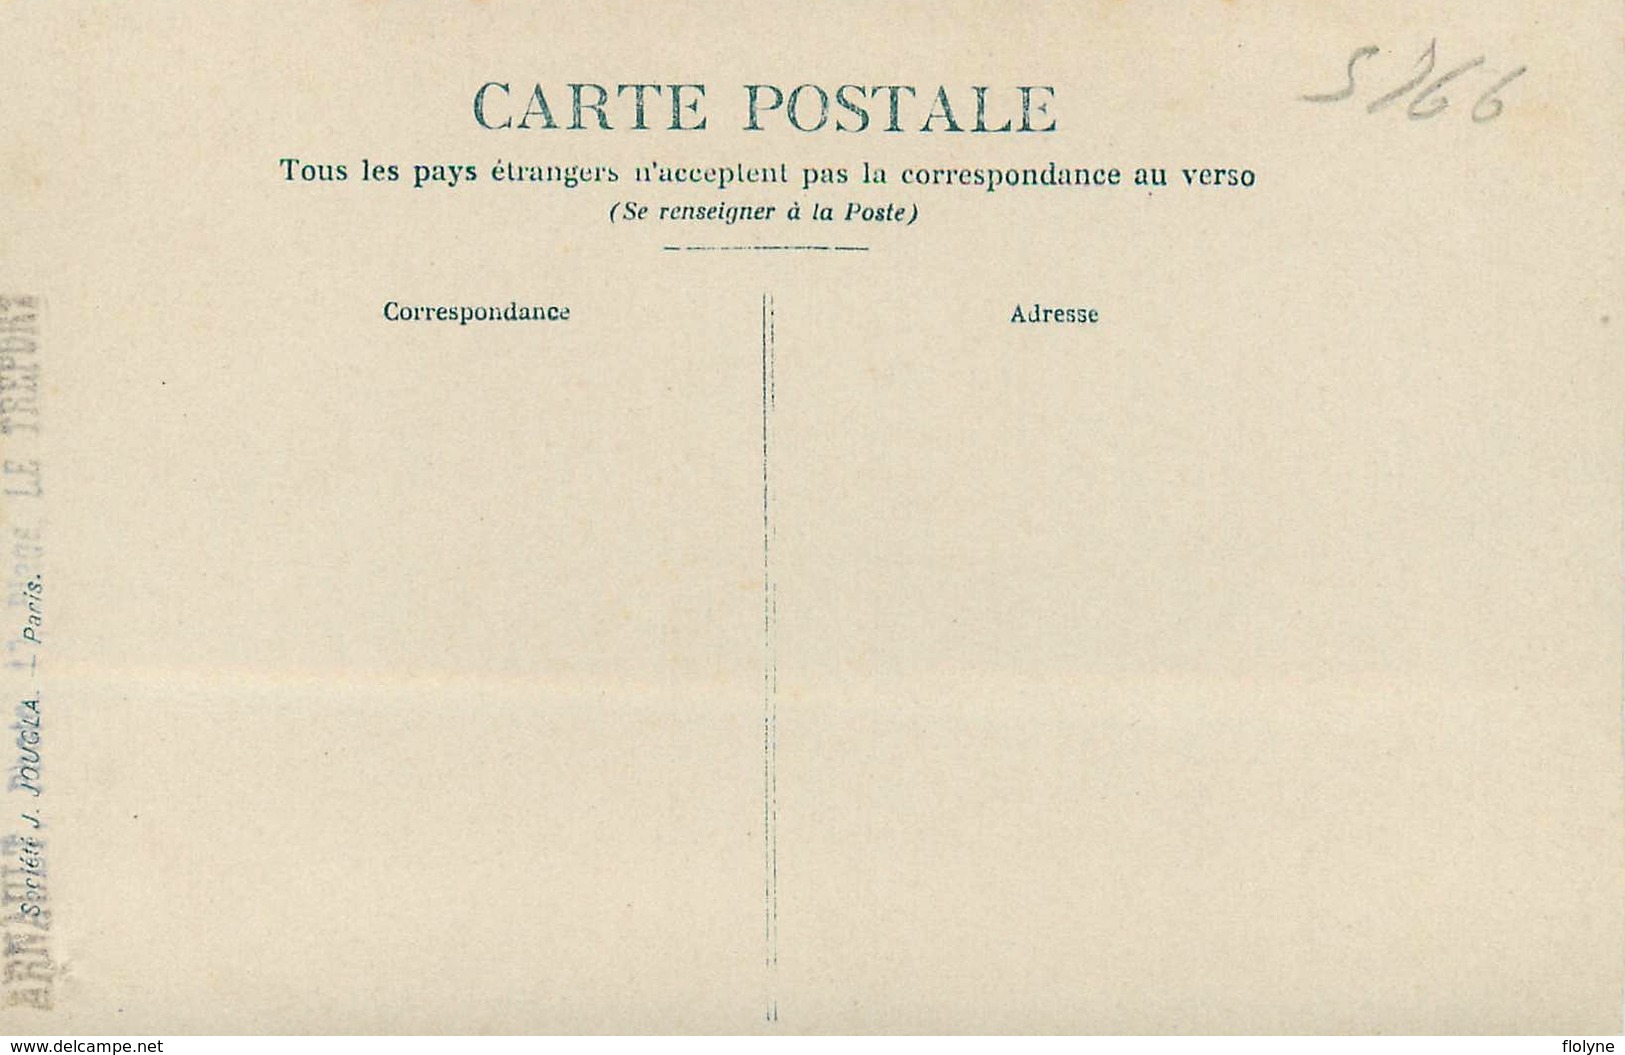 Le Tréport - 19 cartes photos - Délégation des Officiers français à l'enterrement du Capitaine Heath 1916 + autres !!!